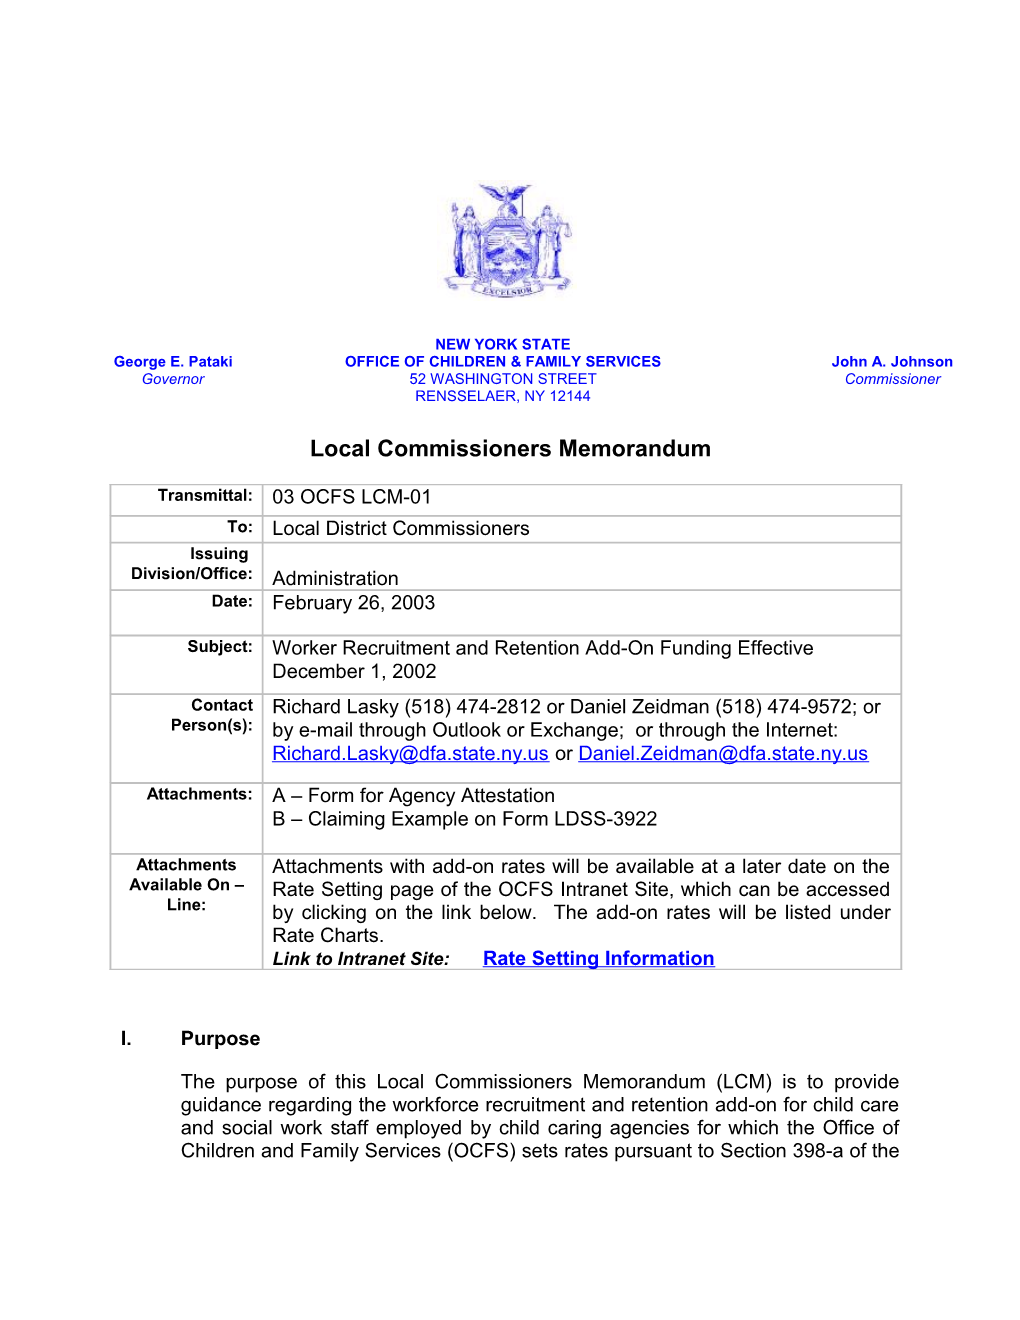 Local Commissioners Memorandum s3